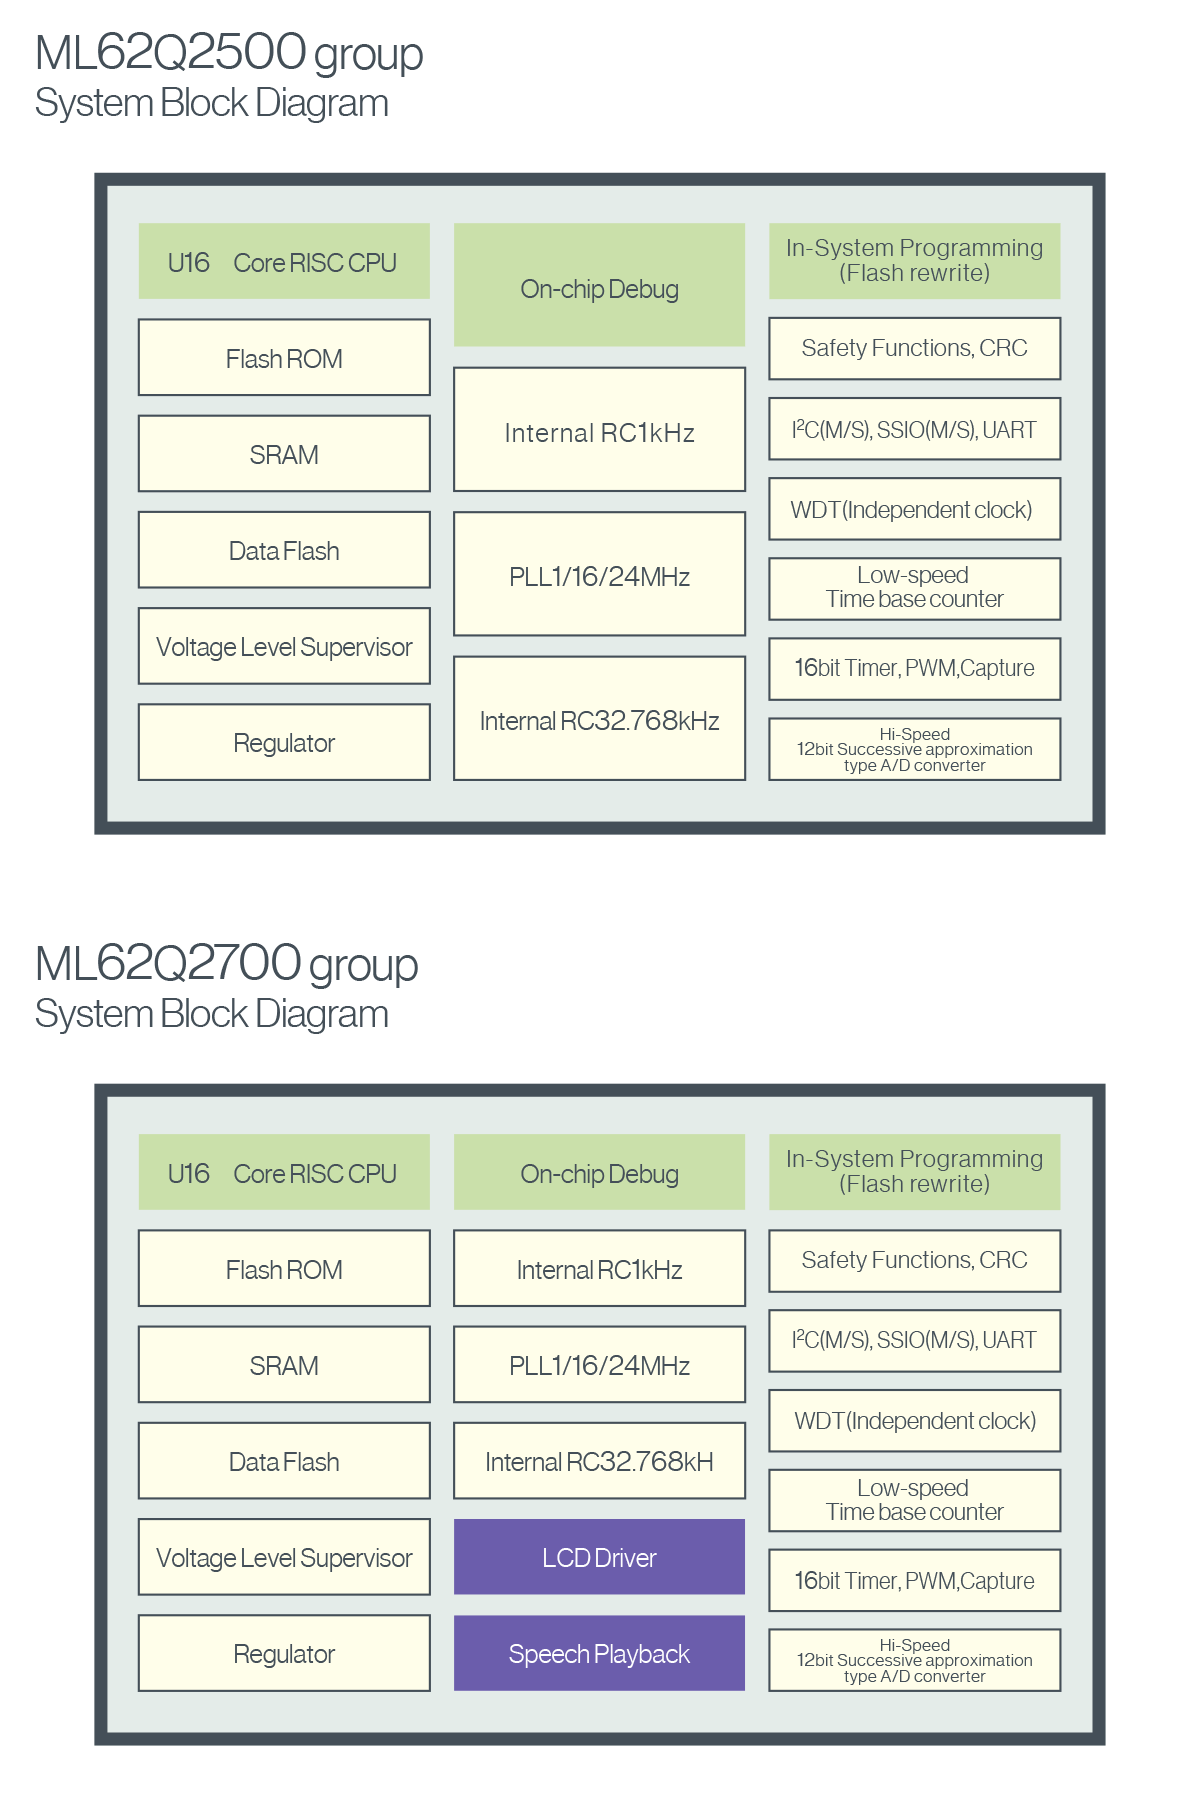 ML62Q1000 series System Block Diagram